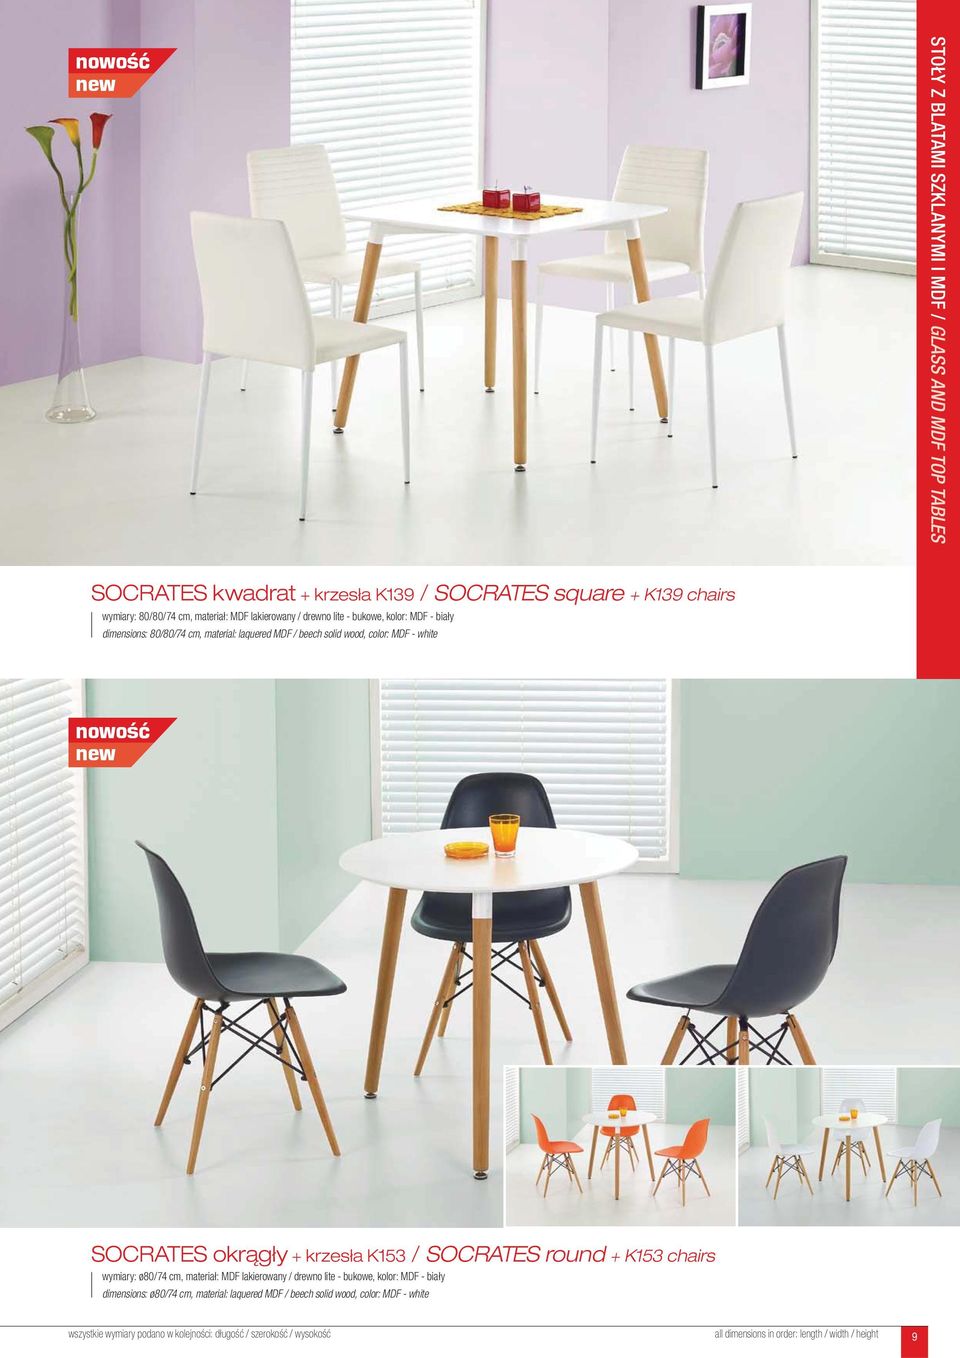 MDF - white SOCRATES okrągły + krzesła K153 / SOCRATES round + K153 chairs wymiary: ø80/74 cm, materiał: MDF lakierowany / drewno lite - bukowe,